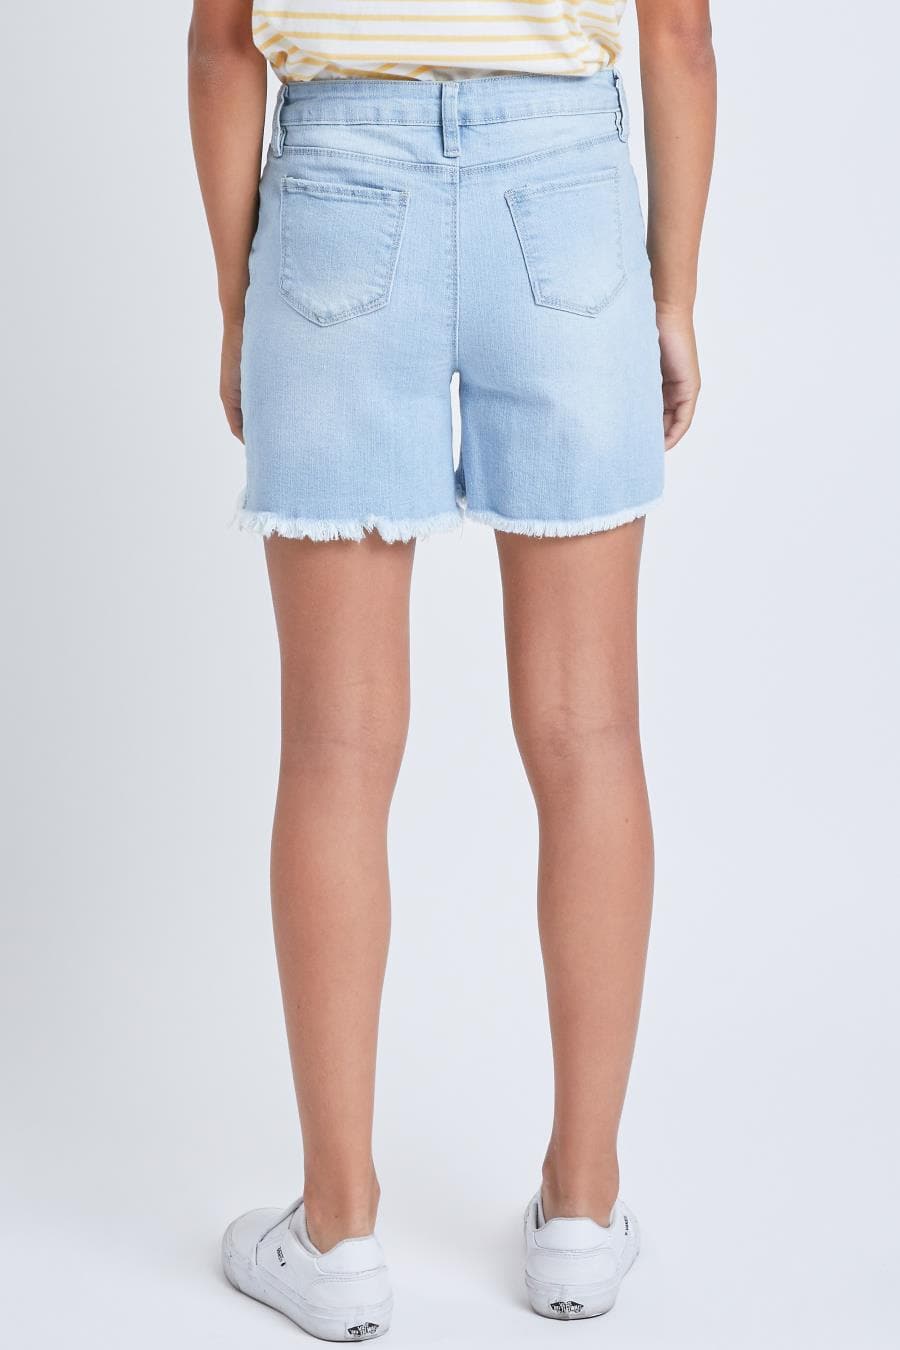 Girls 1 Button Hybrid Denim Fray Hem Shorts Gs69068